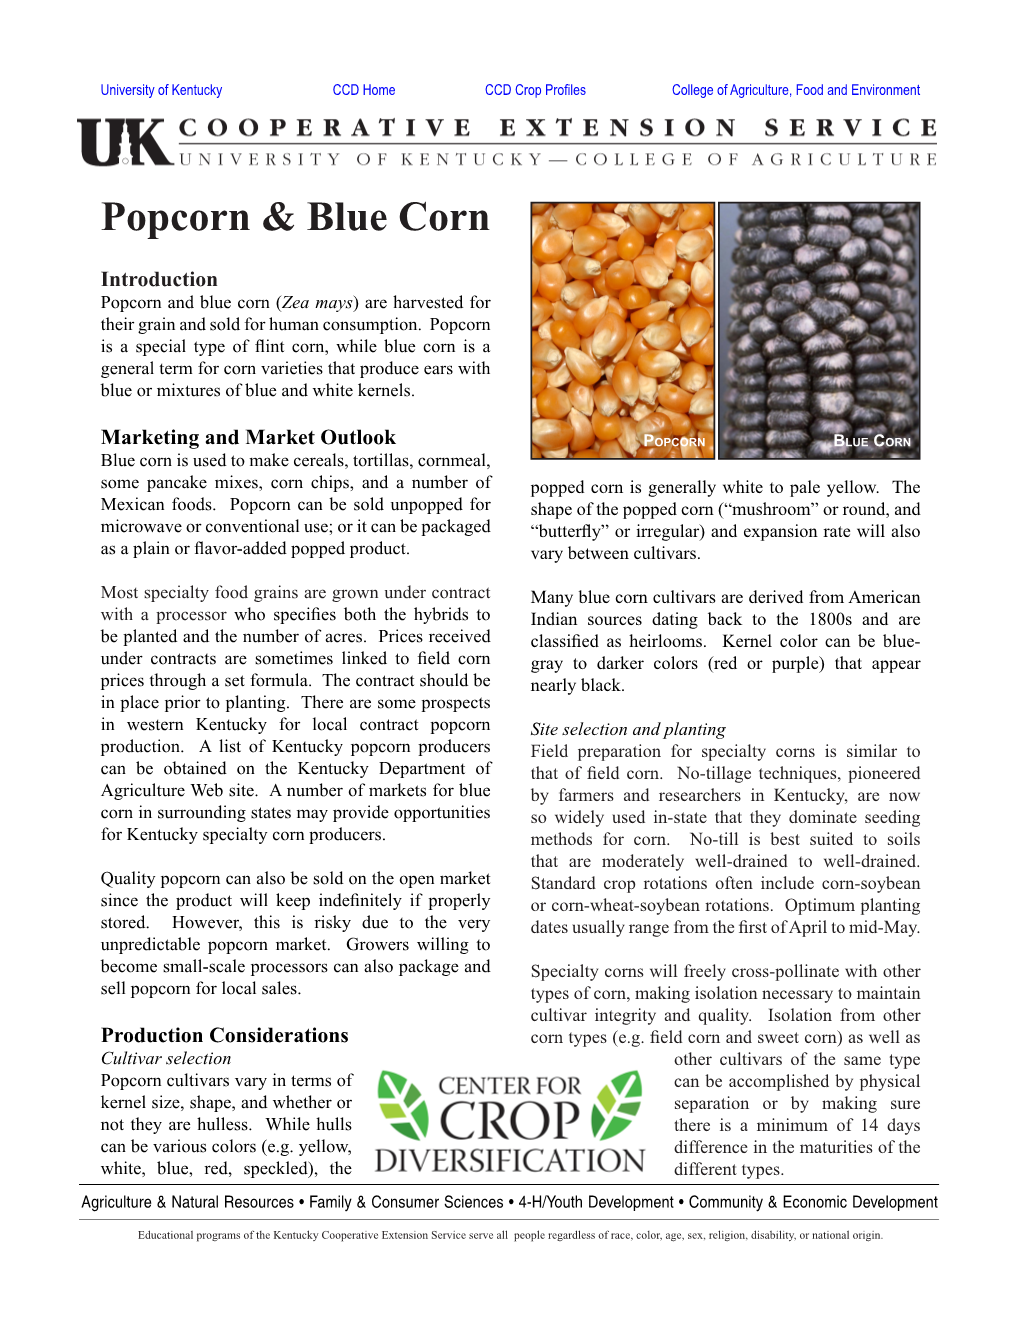 Popcorn & Blue Corn